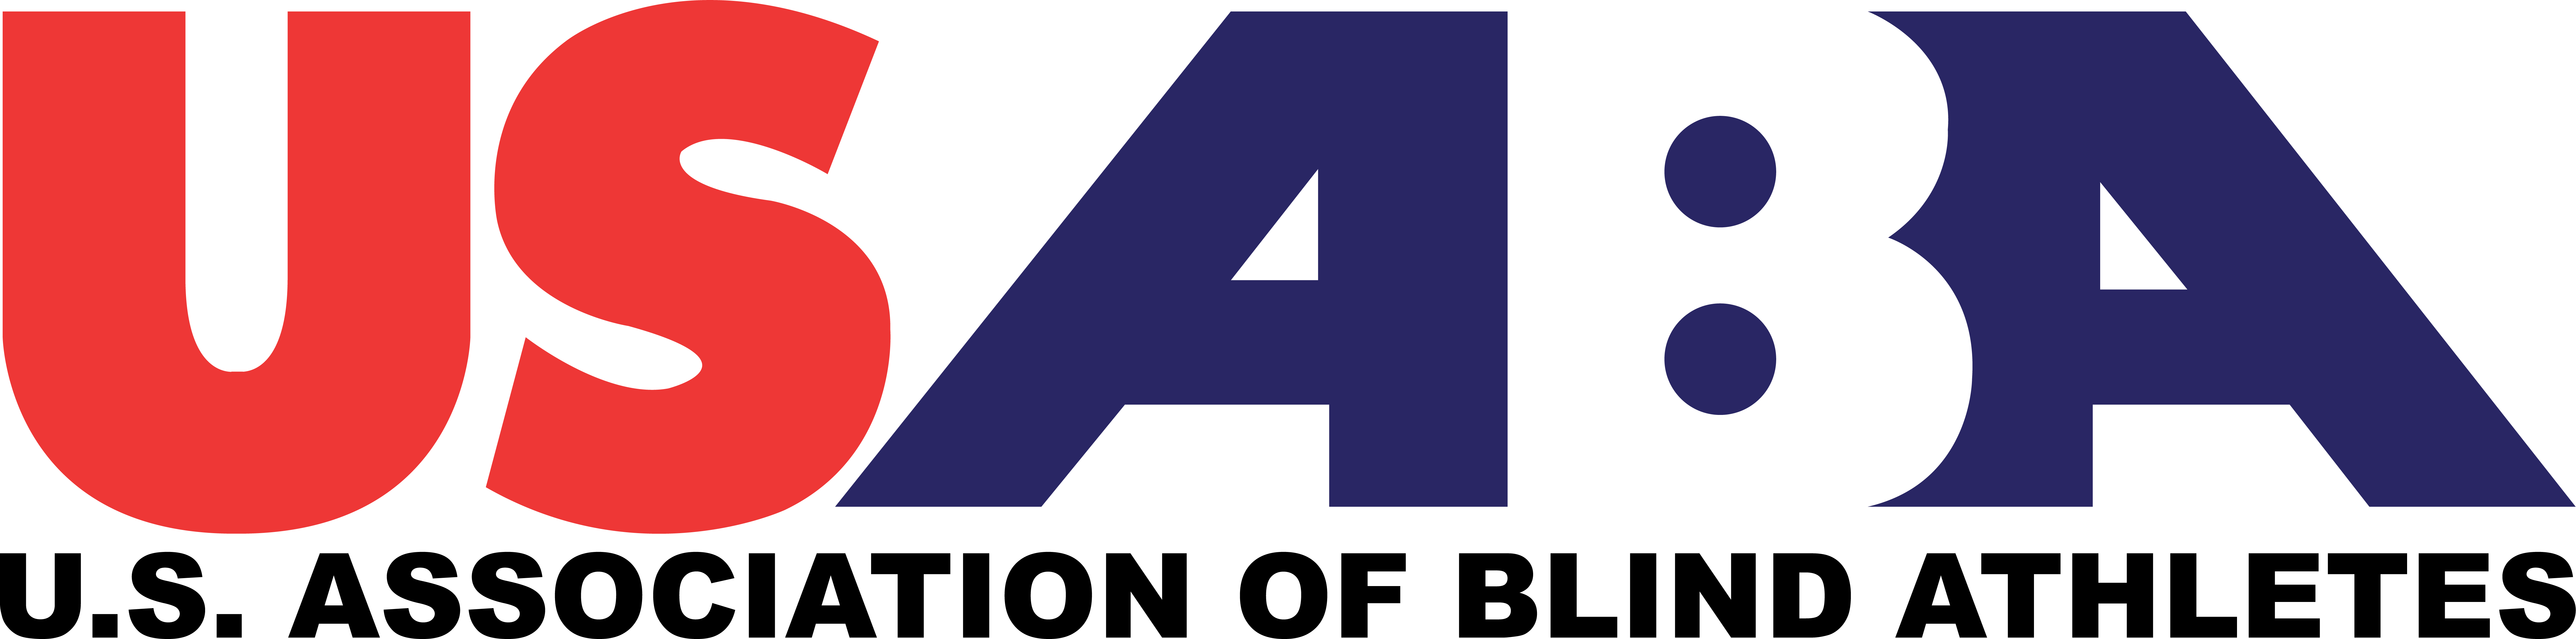 US Association of Blind Athletes Logo